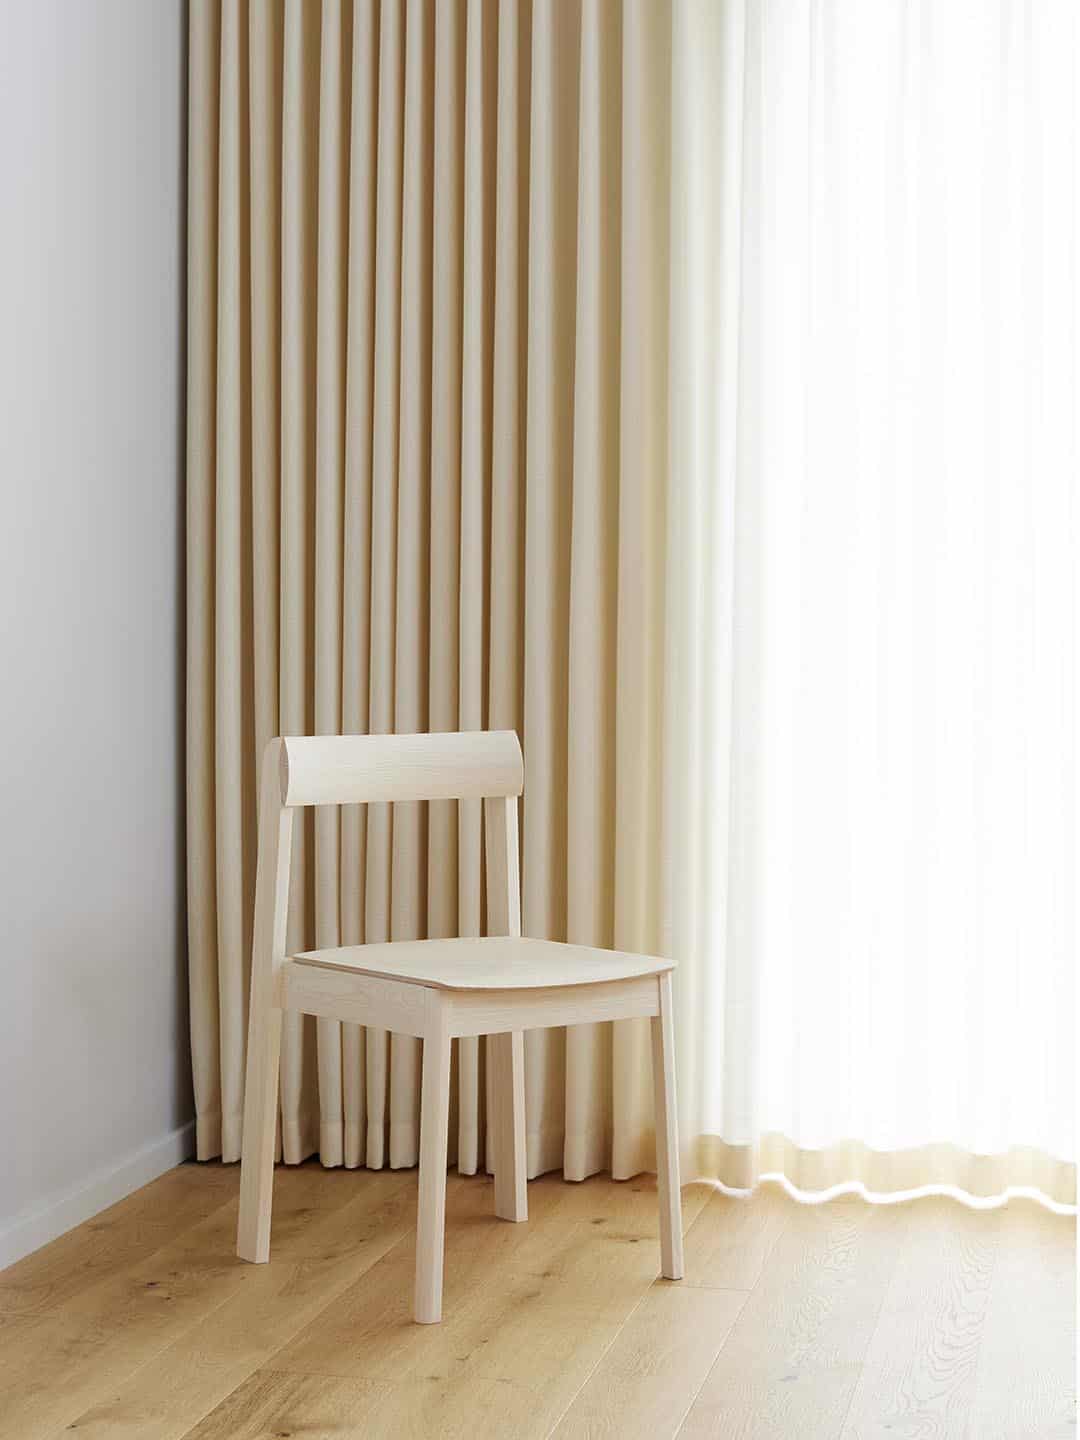 Скандинавское кресло Form and Refine Blueprint в светлом интерьере